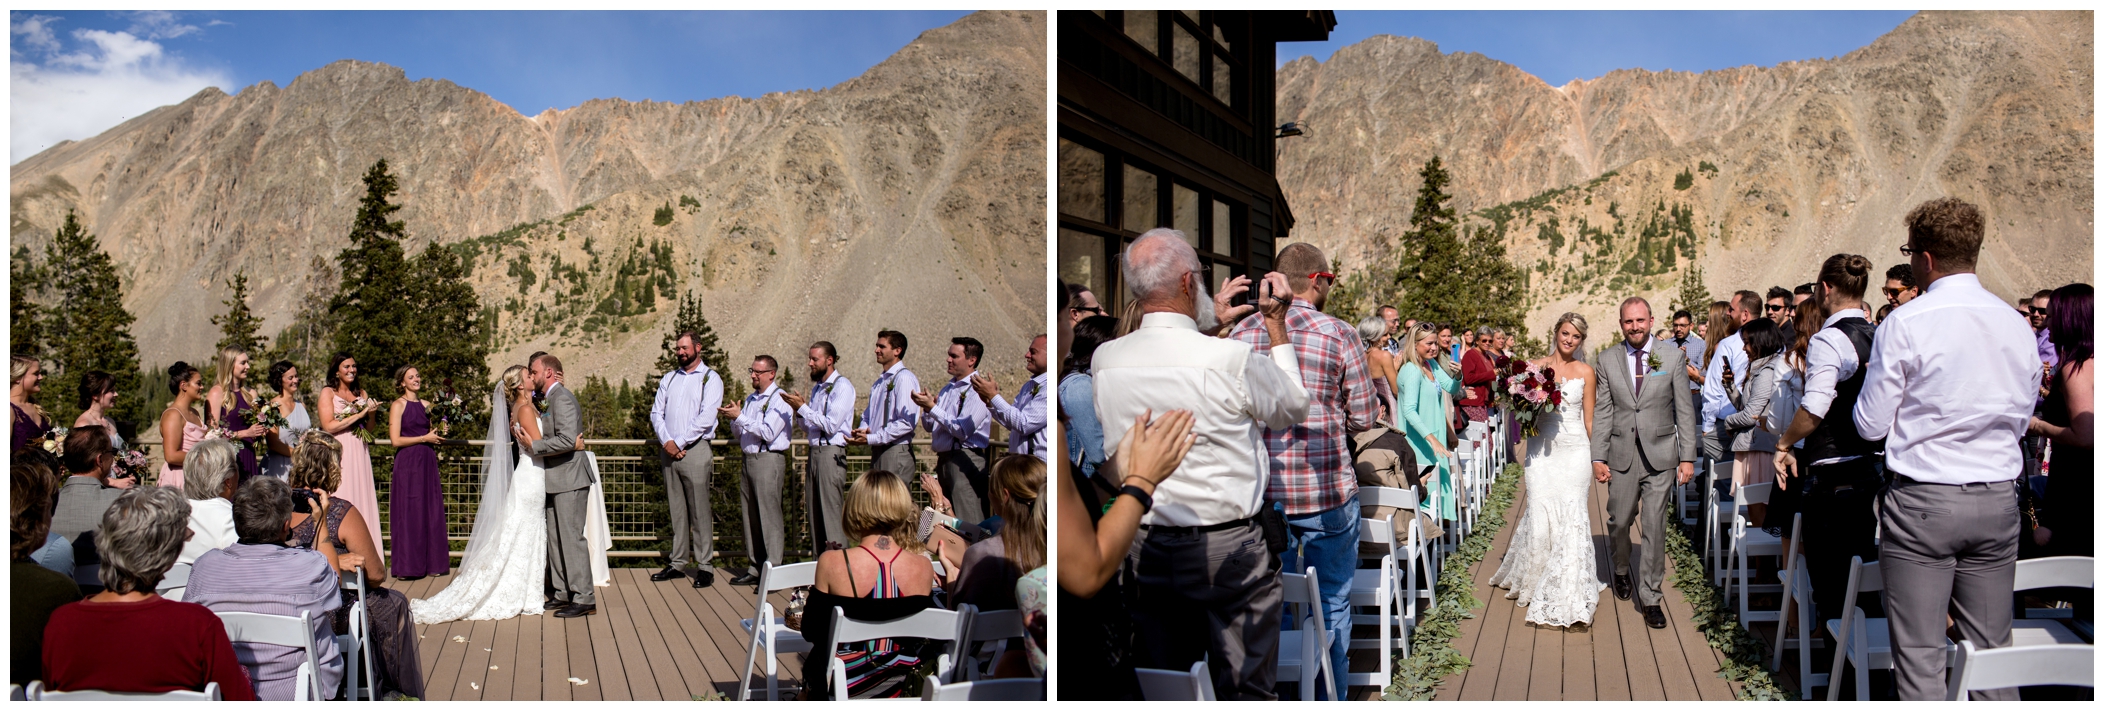 Black Mountain Lodge Colorado wedding ceremony